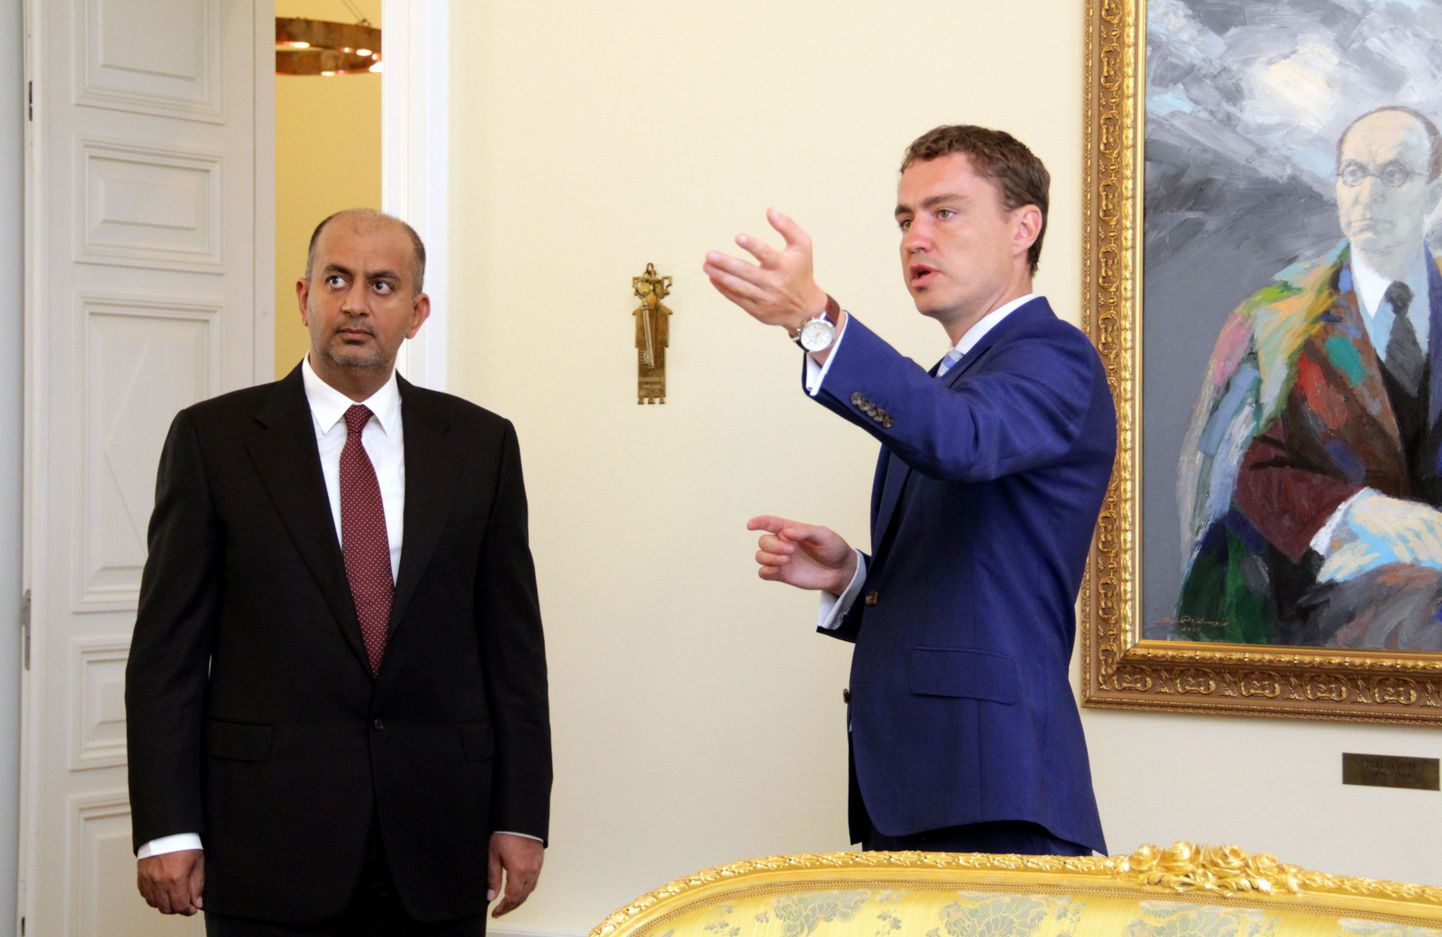 Omaani kaubandus- ja tööstusminister Ali Masoud Al Sunaidy ja Eesti peaminister Taavi Rõivas arutasid kohtudes eelkõige infotehnoloogia küsimusi.